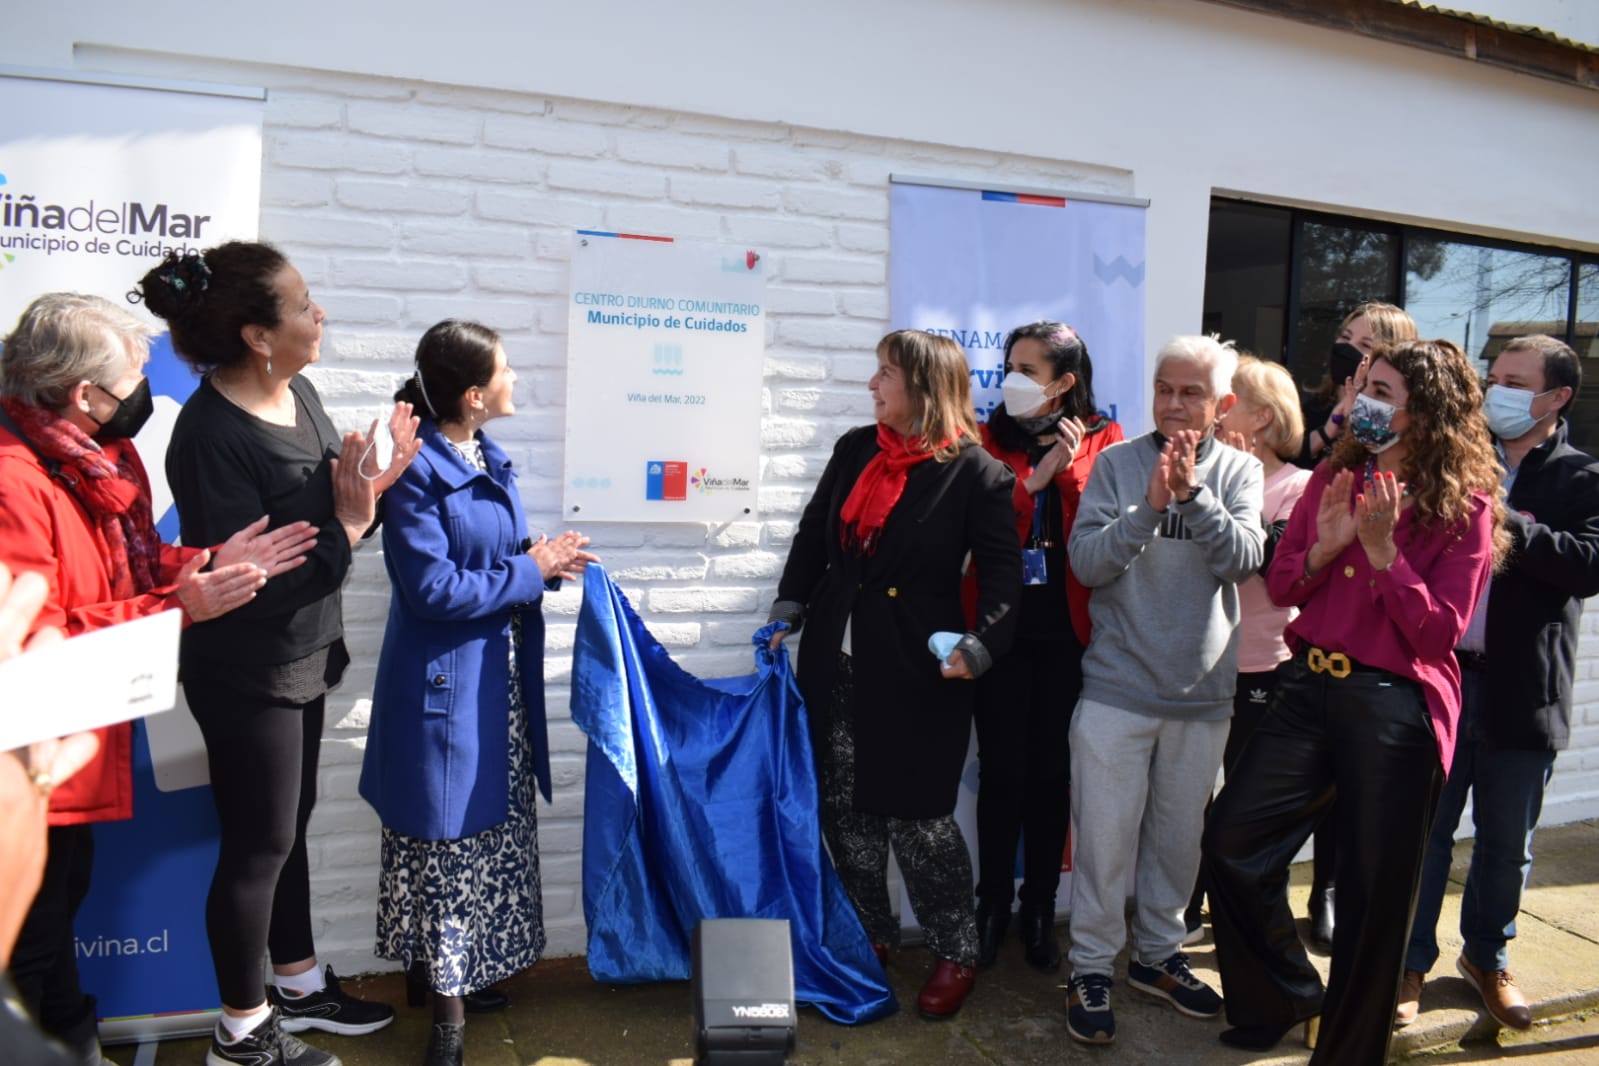  Ministra Jeannette Vega anuncia creación del primer centro diurno comunitario para personas mayores (CEDIAM) de Viña Del Mar